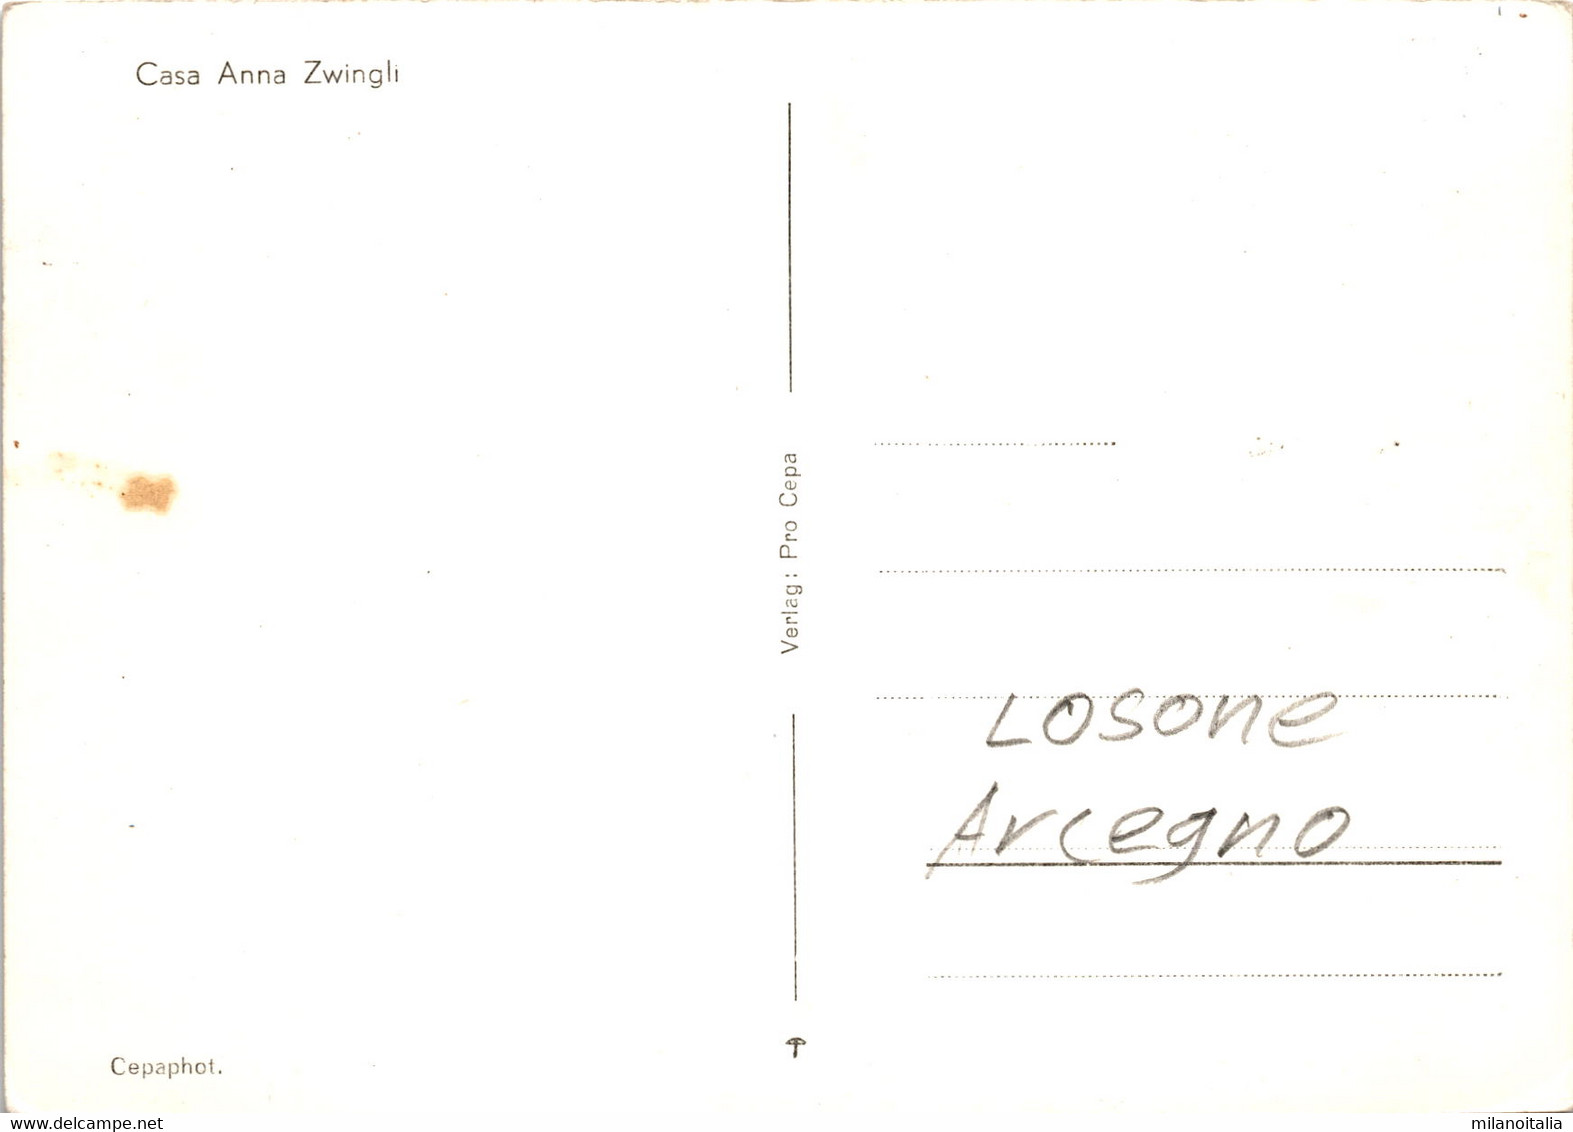 Casa Anna Zwingli - Losone Arcegno - Losone